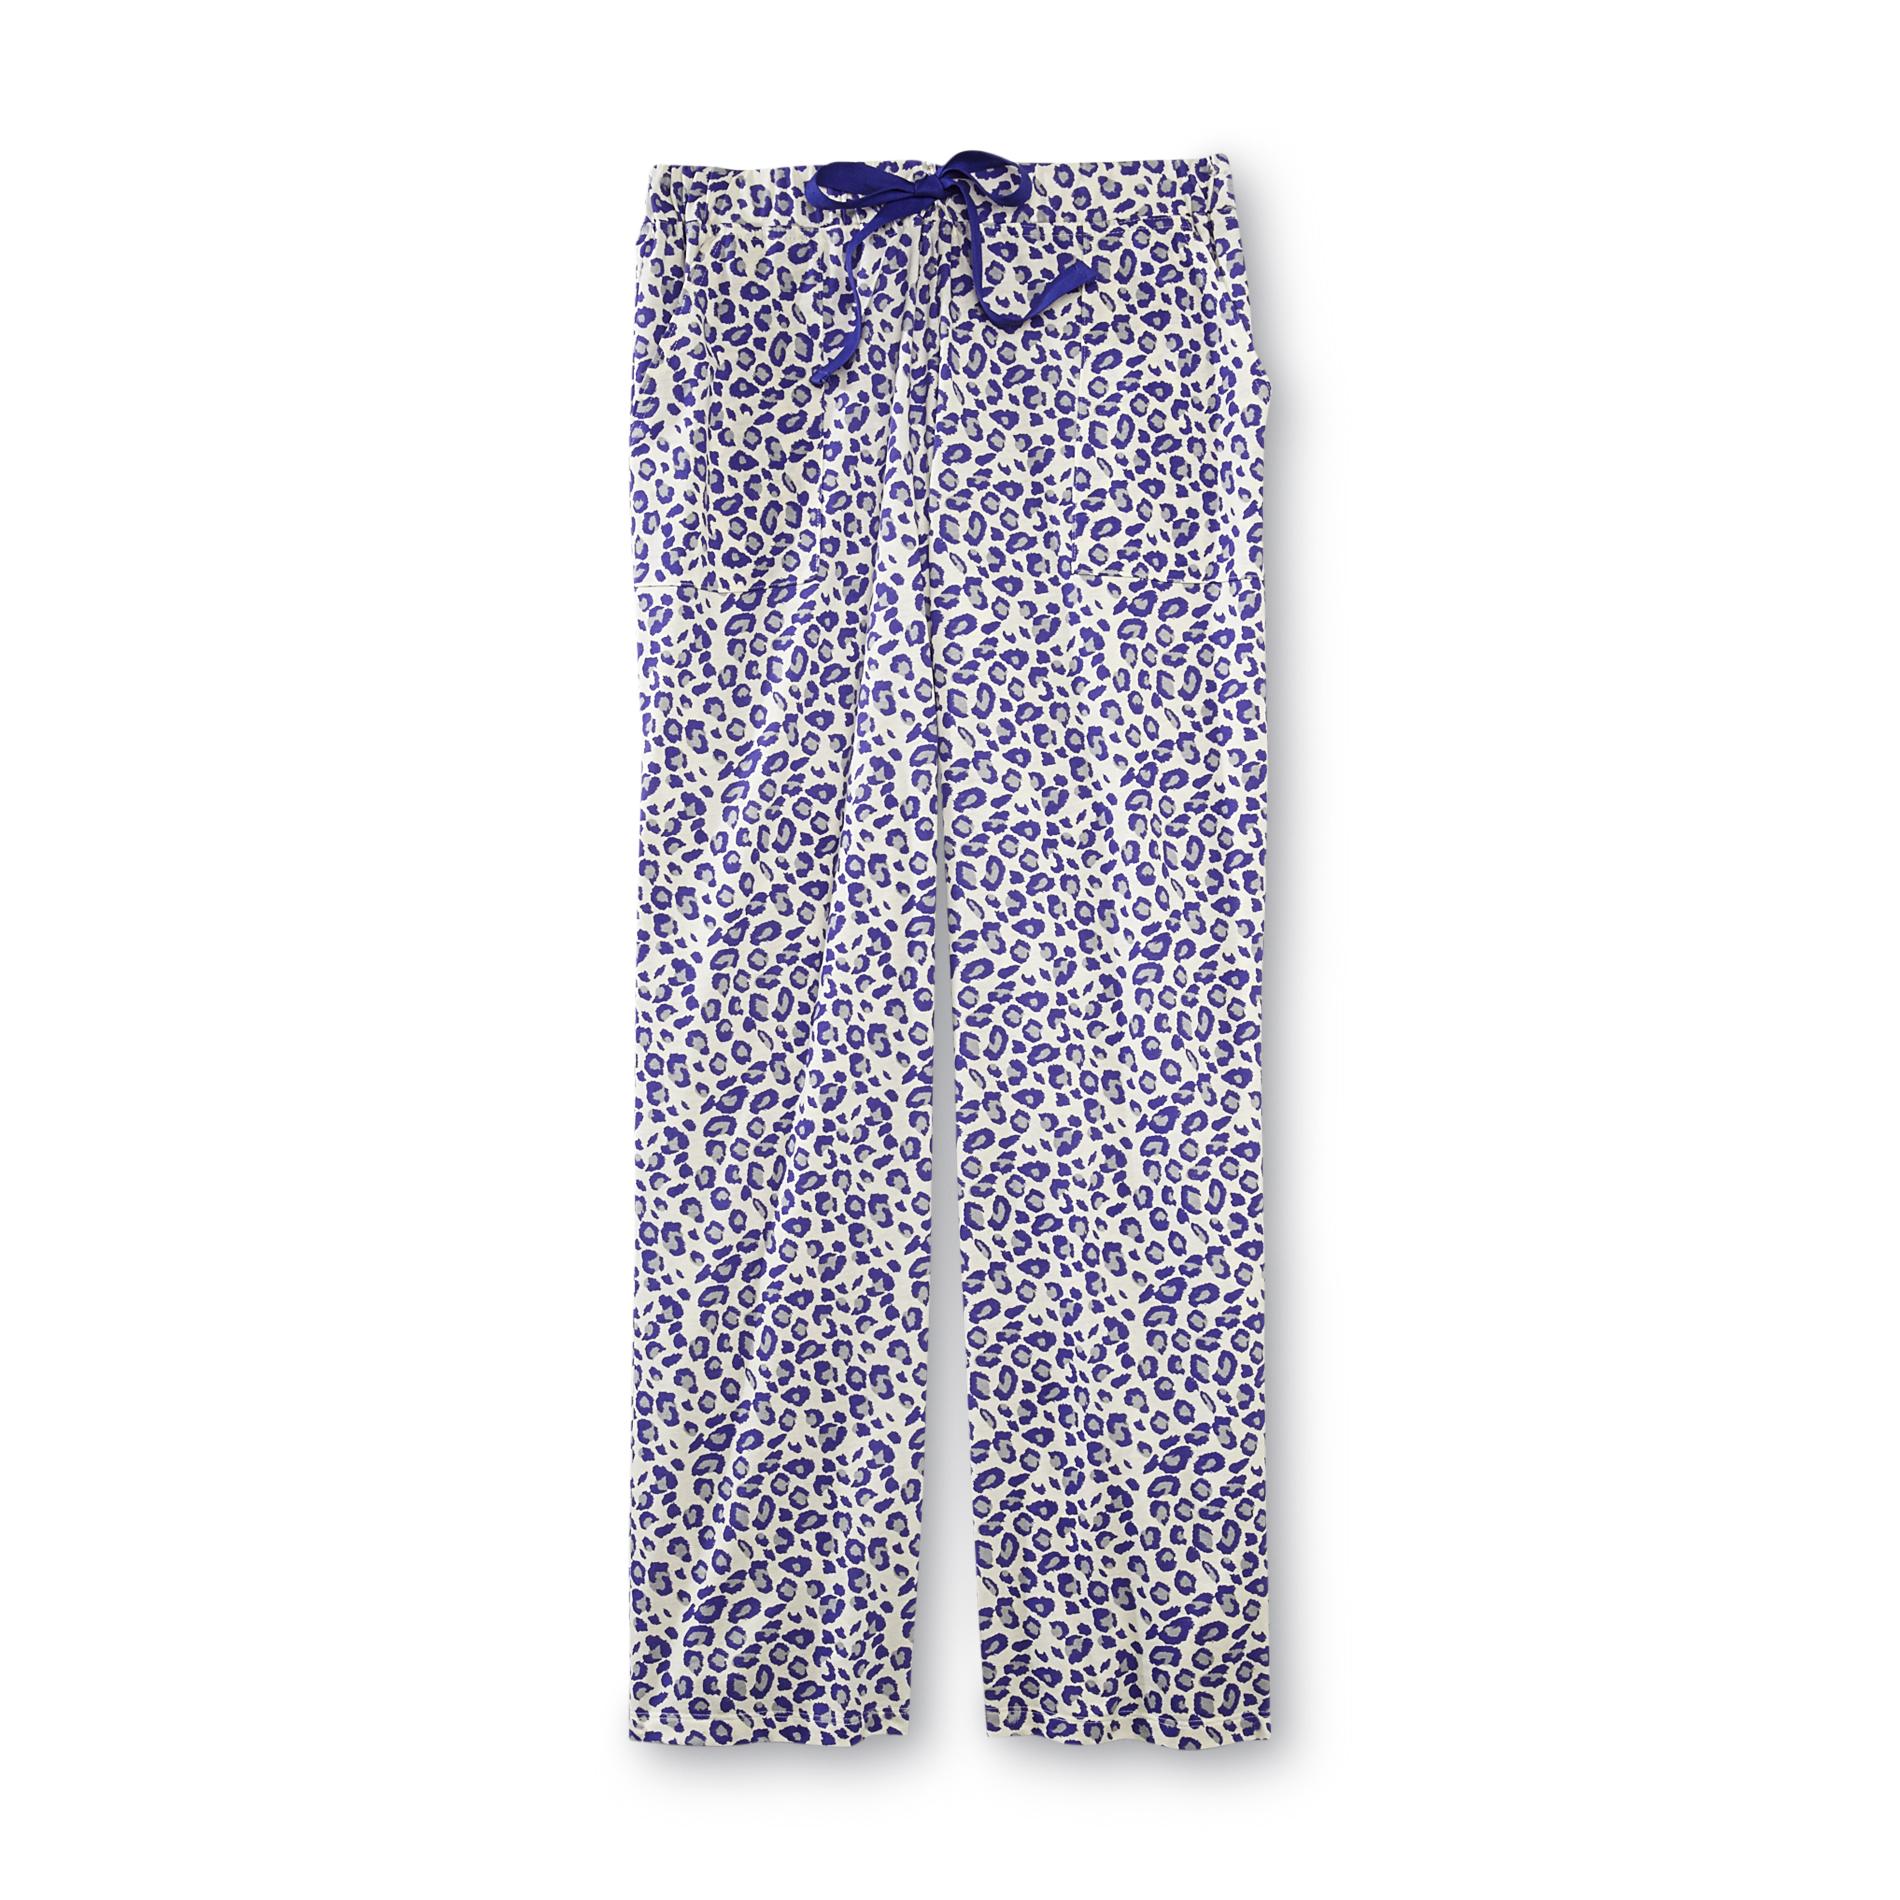 Covington Women's Lounge Pants - Leopard Print